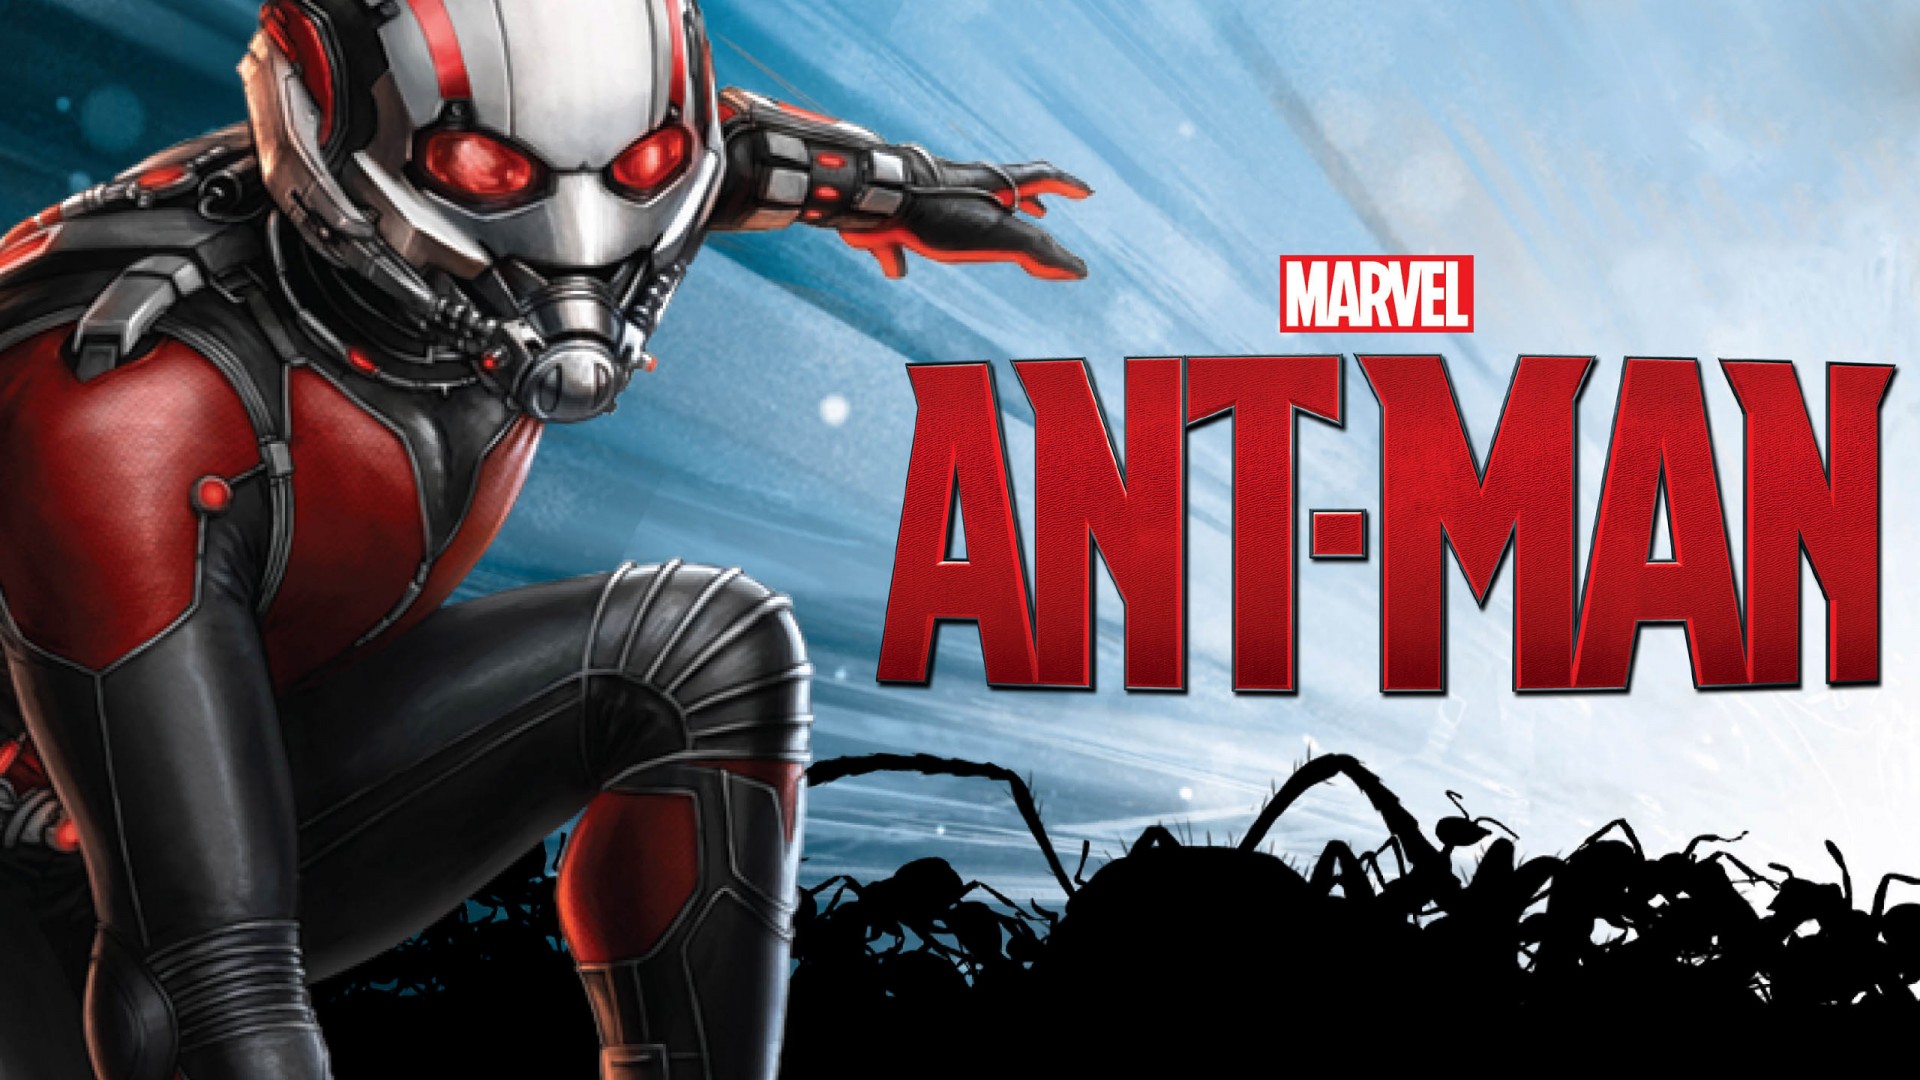 Marvel-Ant-Man-Banner-Poster1.jpg